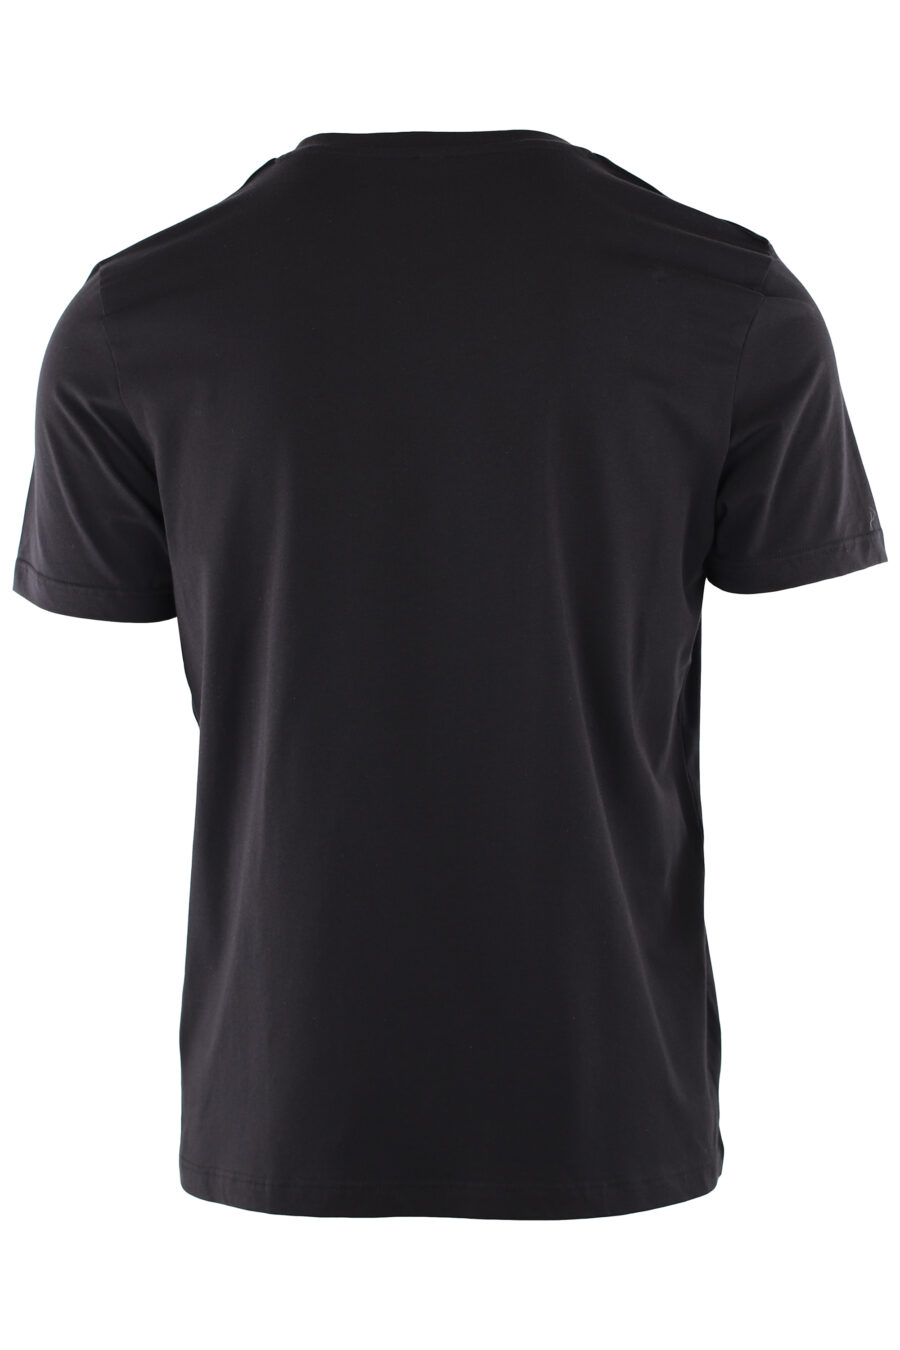 Packung mit zwei schwarzen T-Shirts mit Logoband an den Schultern - IMG 7310